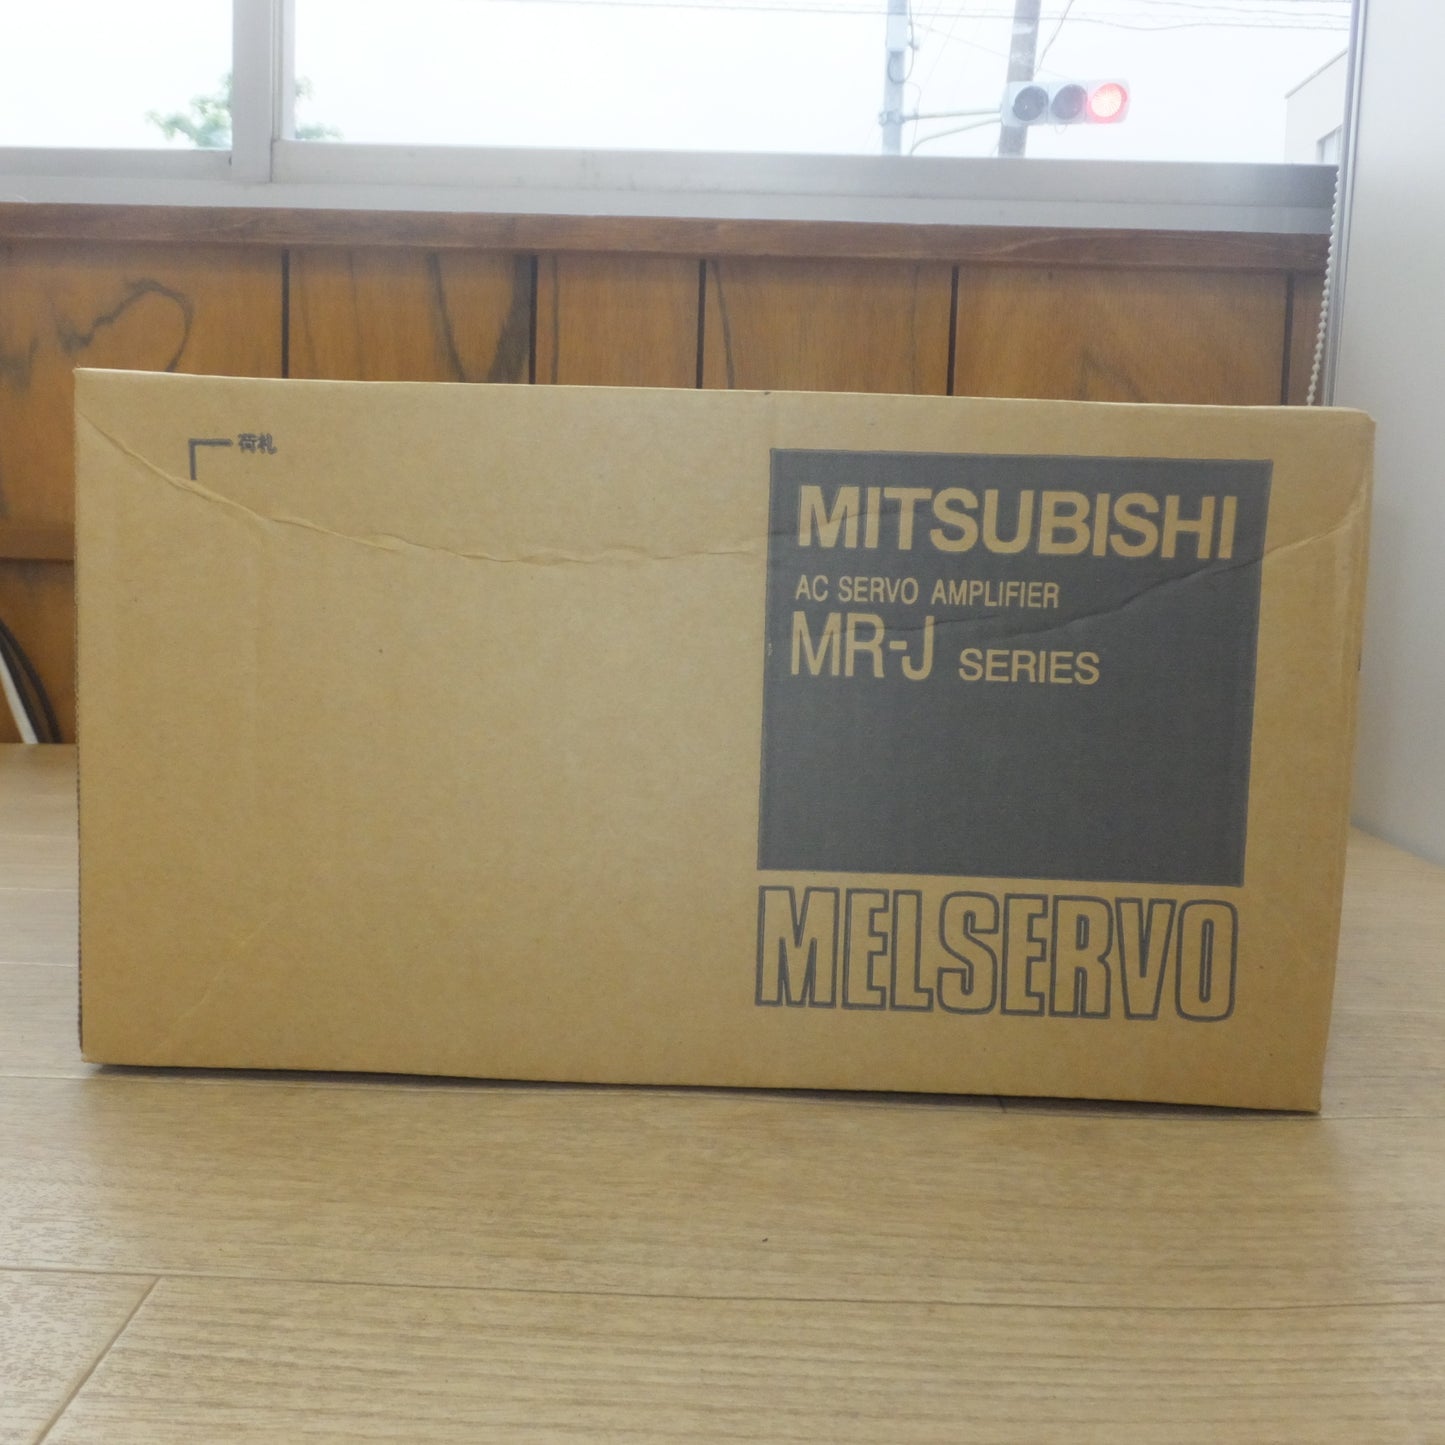 [送料無料] 未使用★三菱 MITSUBISHI サーボアンプ AC SERVO AMPLIFIER MR-J SERIES MR-J2S-500A(4)★